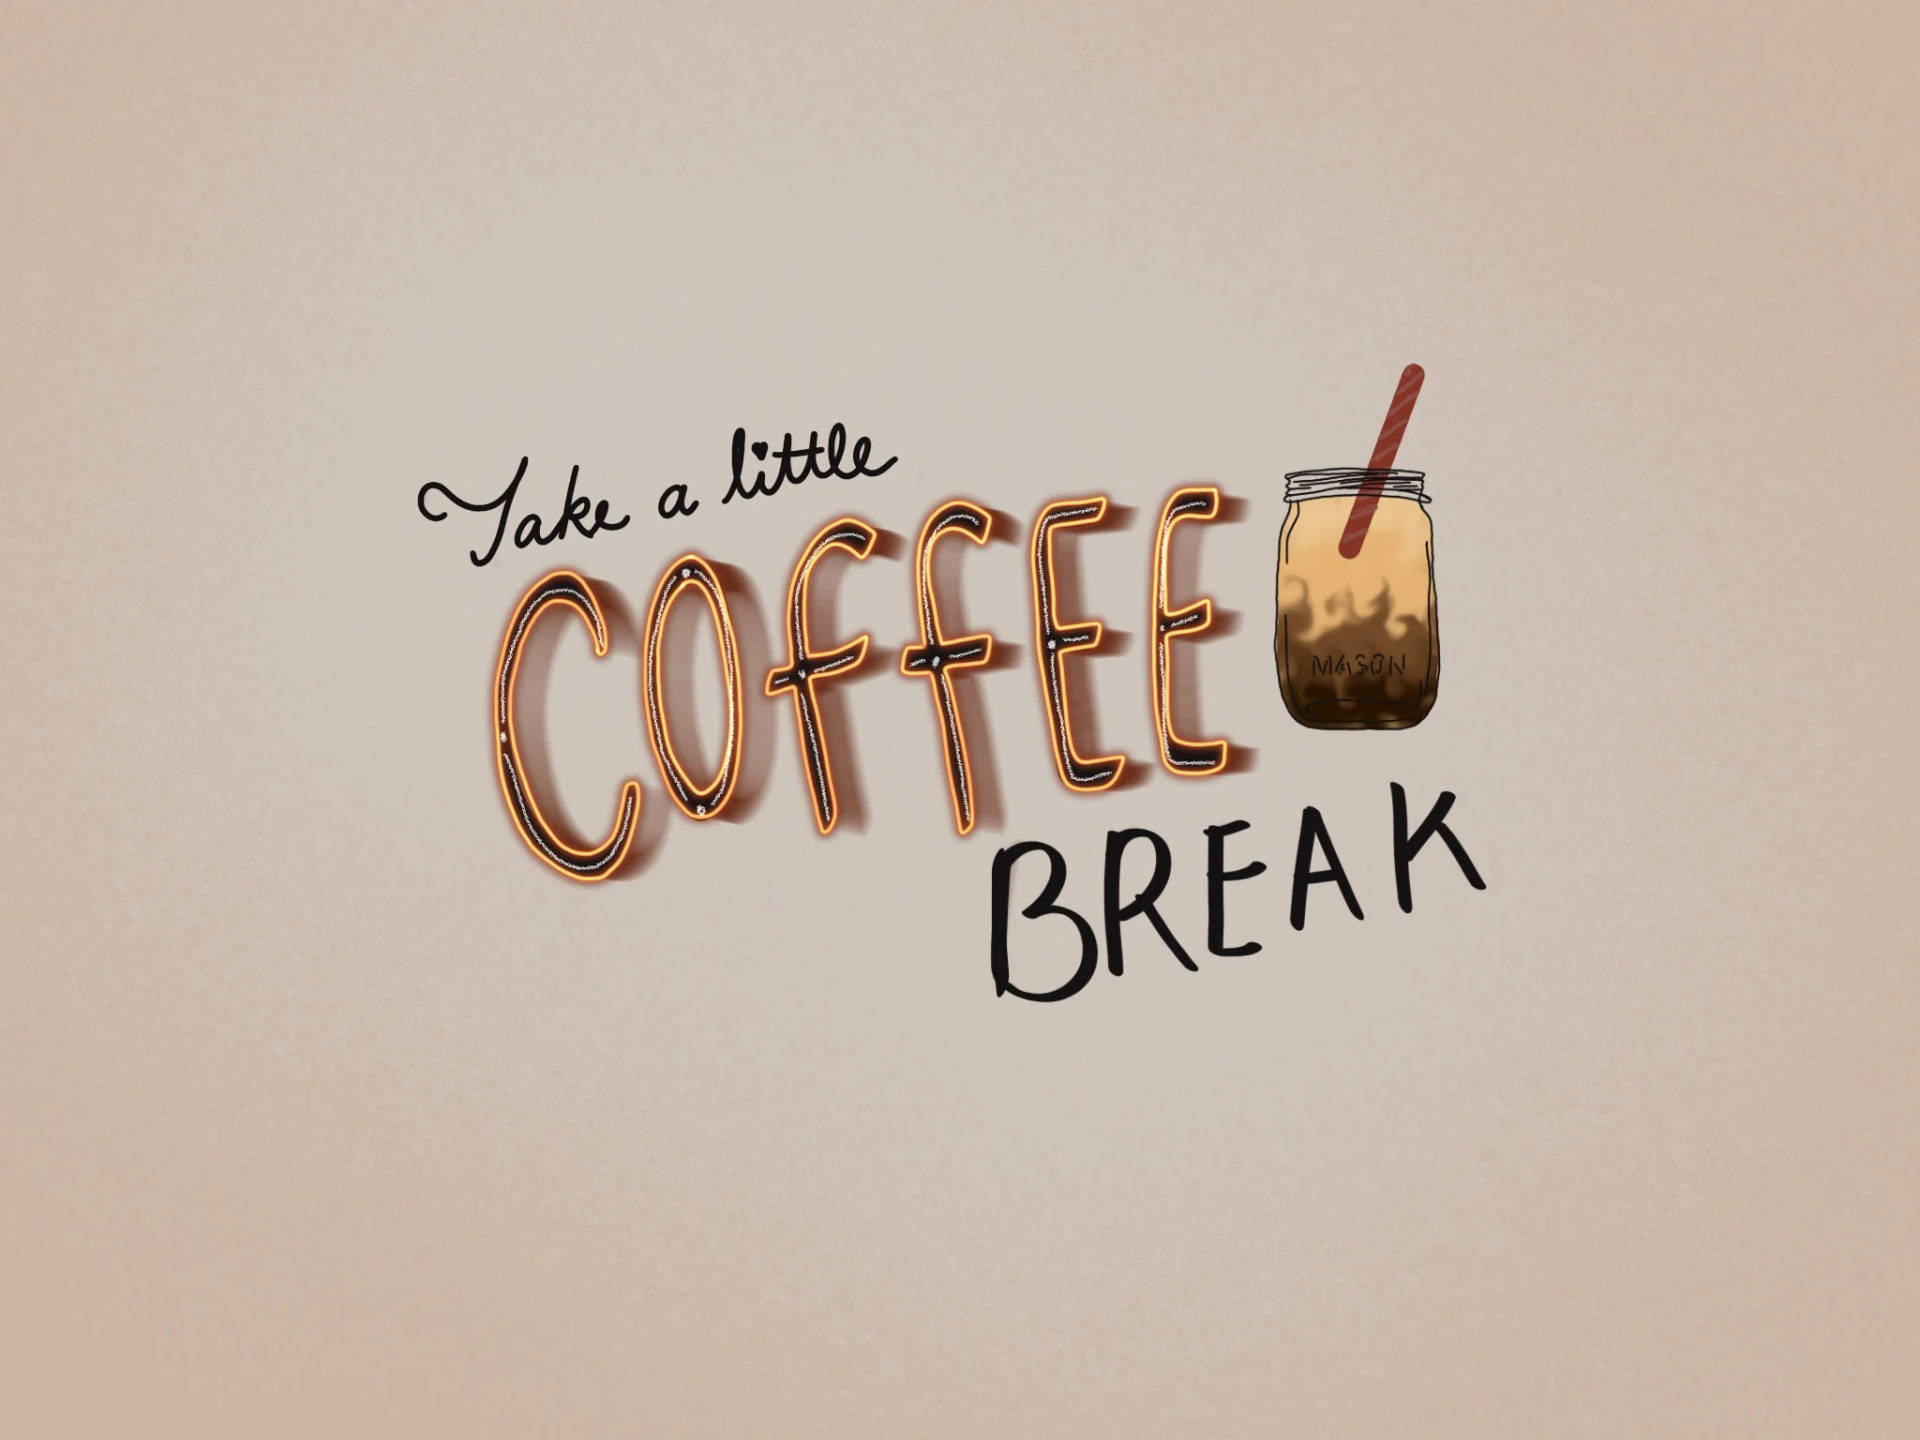 Take A Little Break Coffee Aesthetic Picture